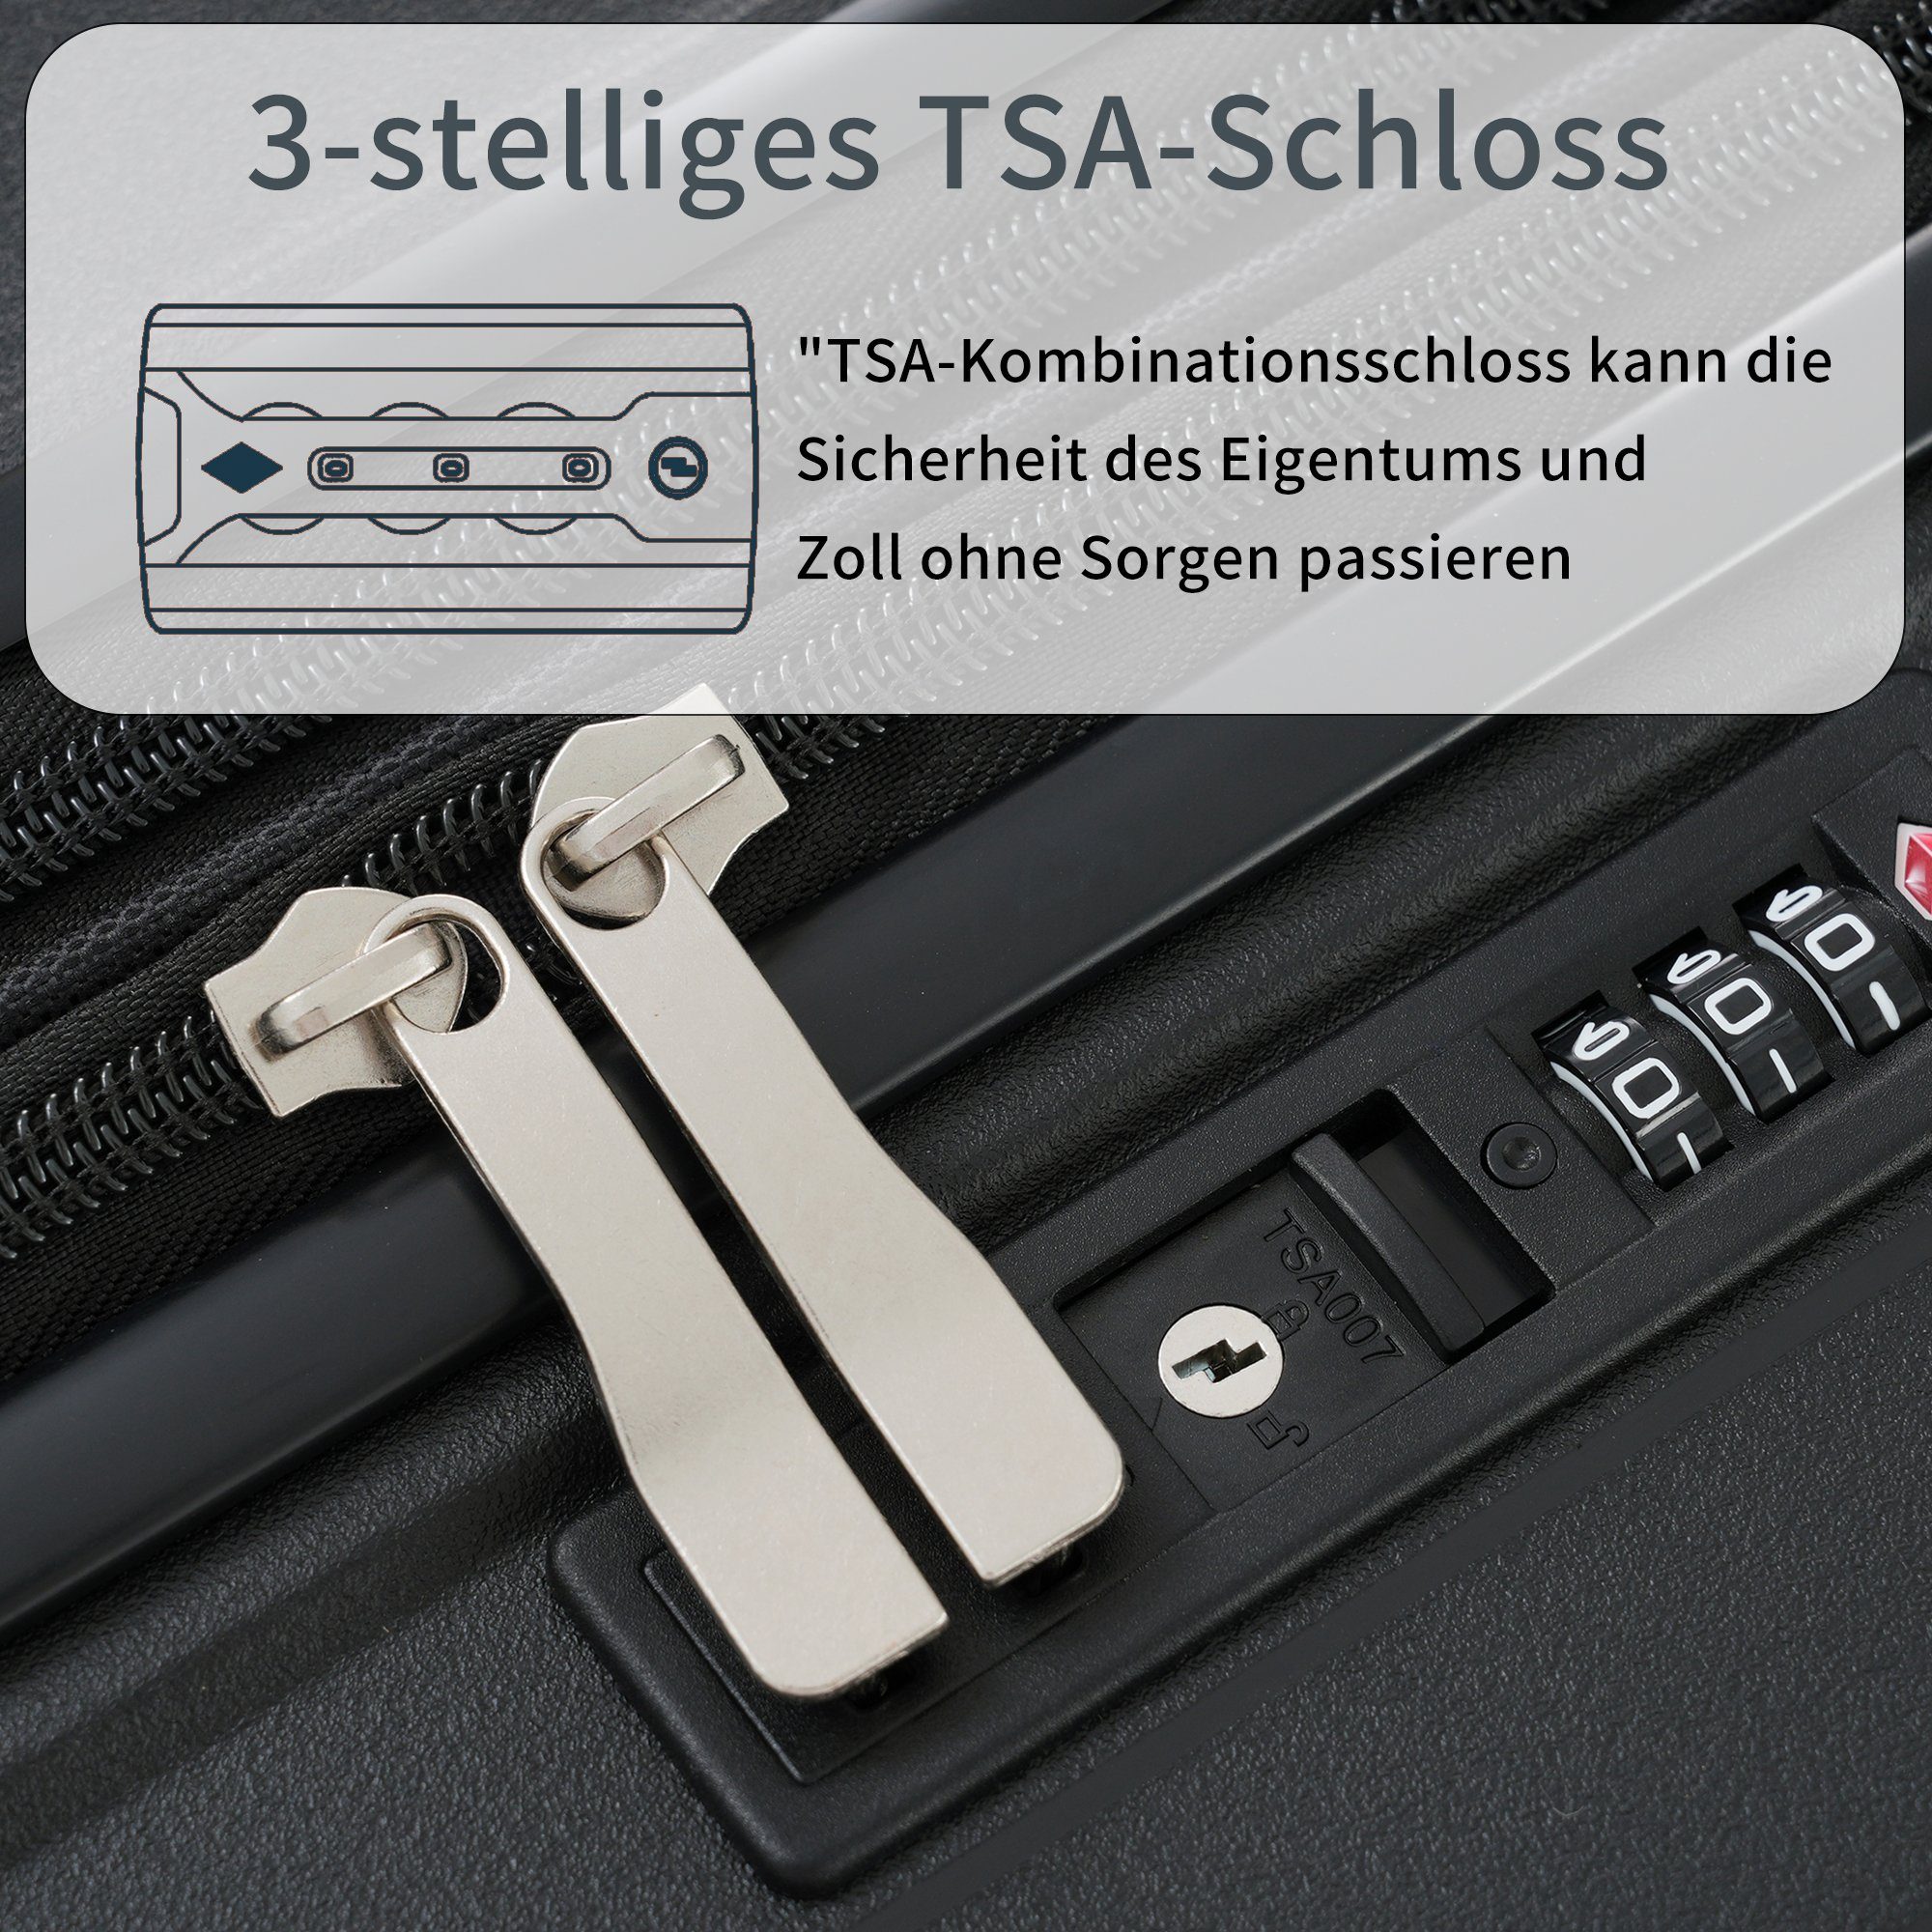 Flieks Trolleyset, 4 Rollen, Trolley Handgepäck PP-Gepäck tlg), Reisekoffer (3 Schwarz Koffer Erweiterung Set